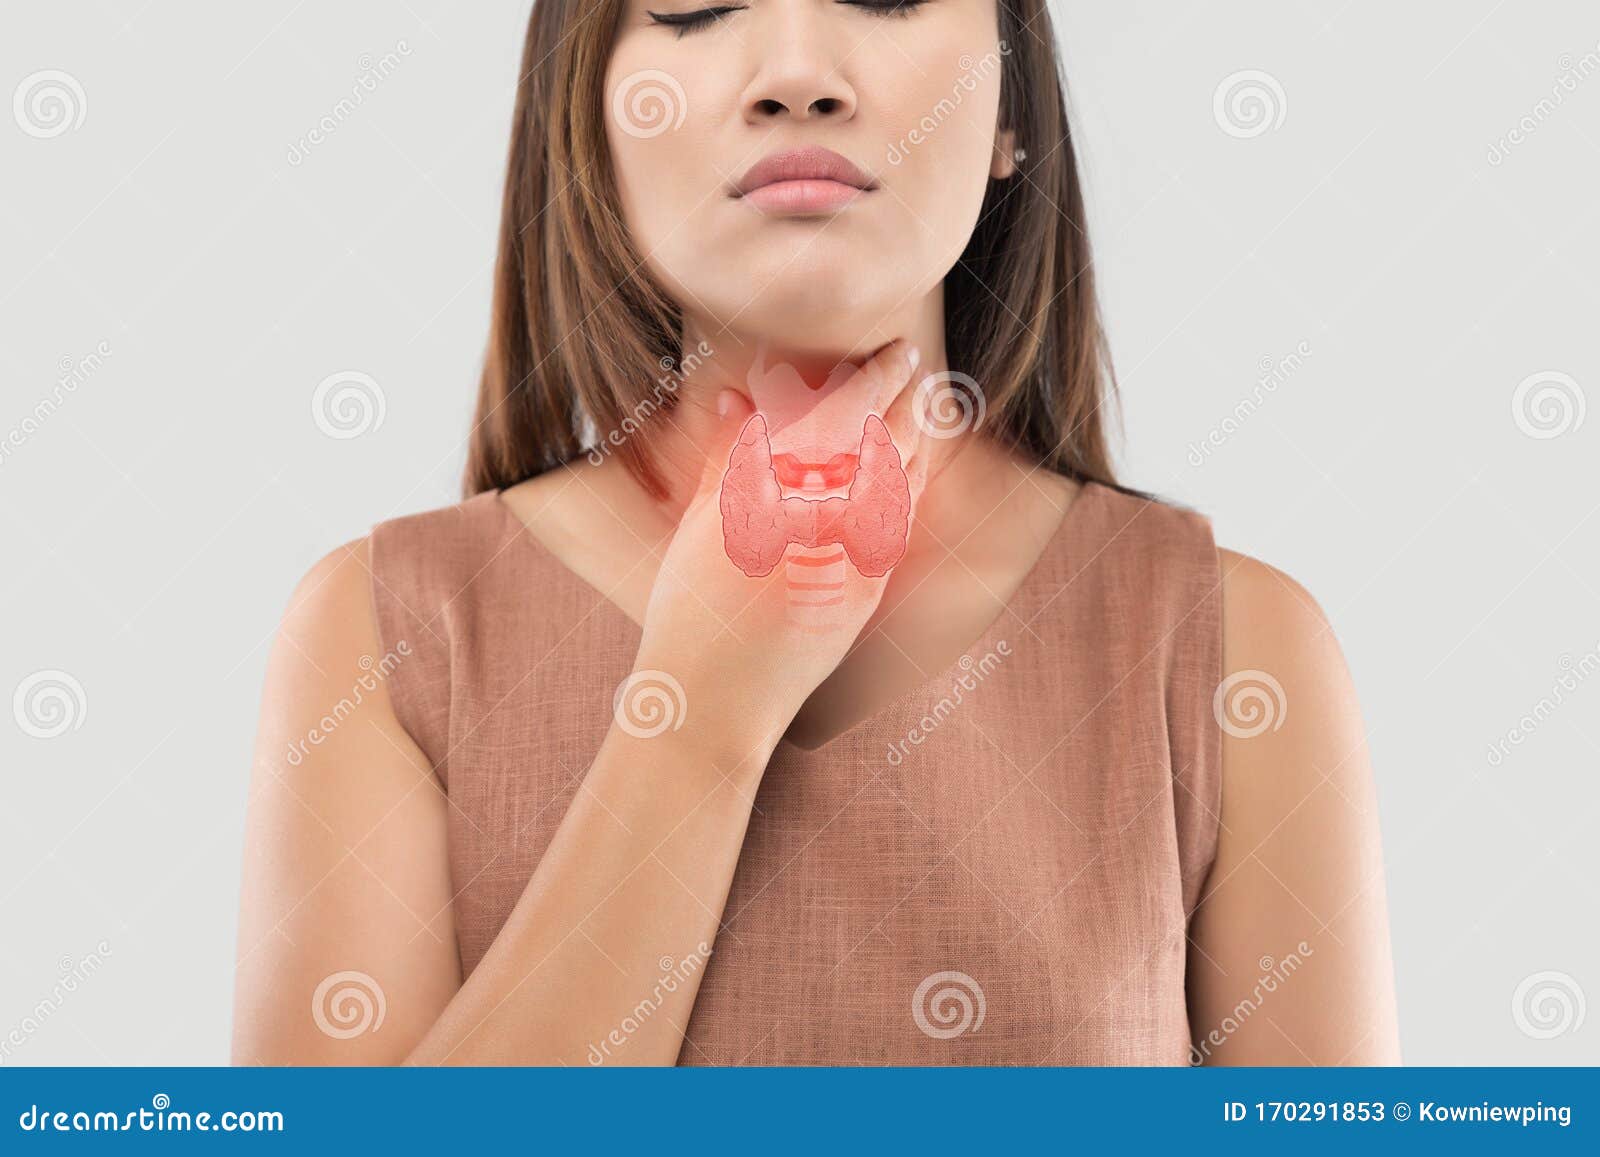 women thyroid gland control